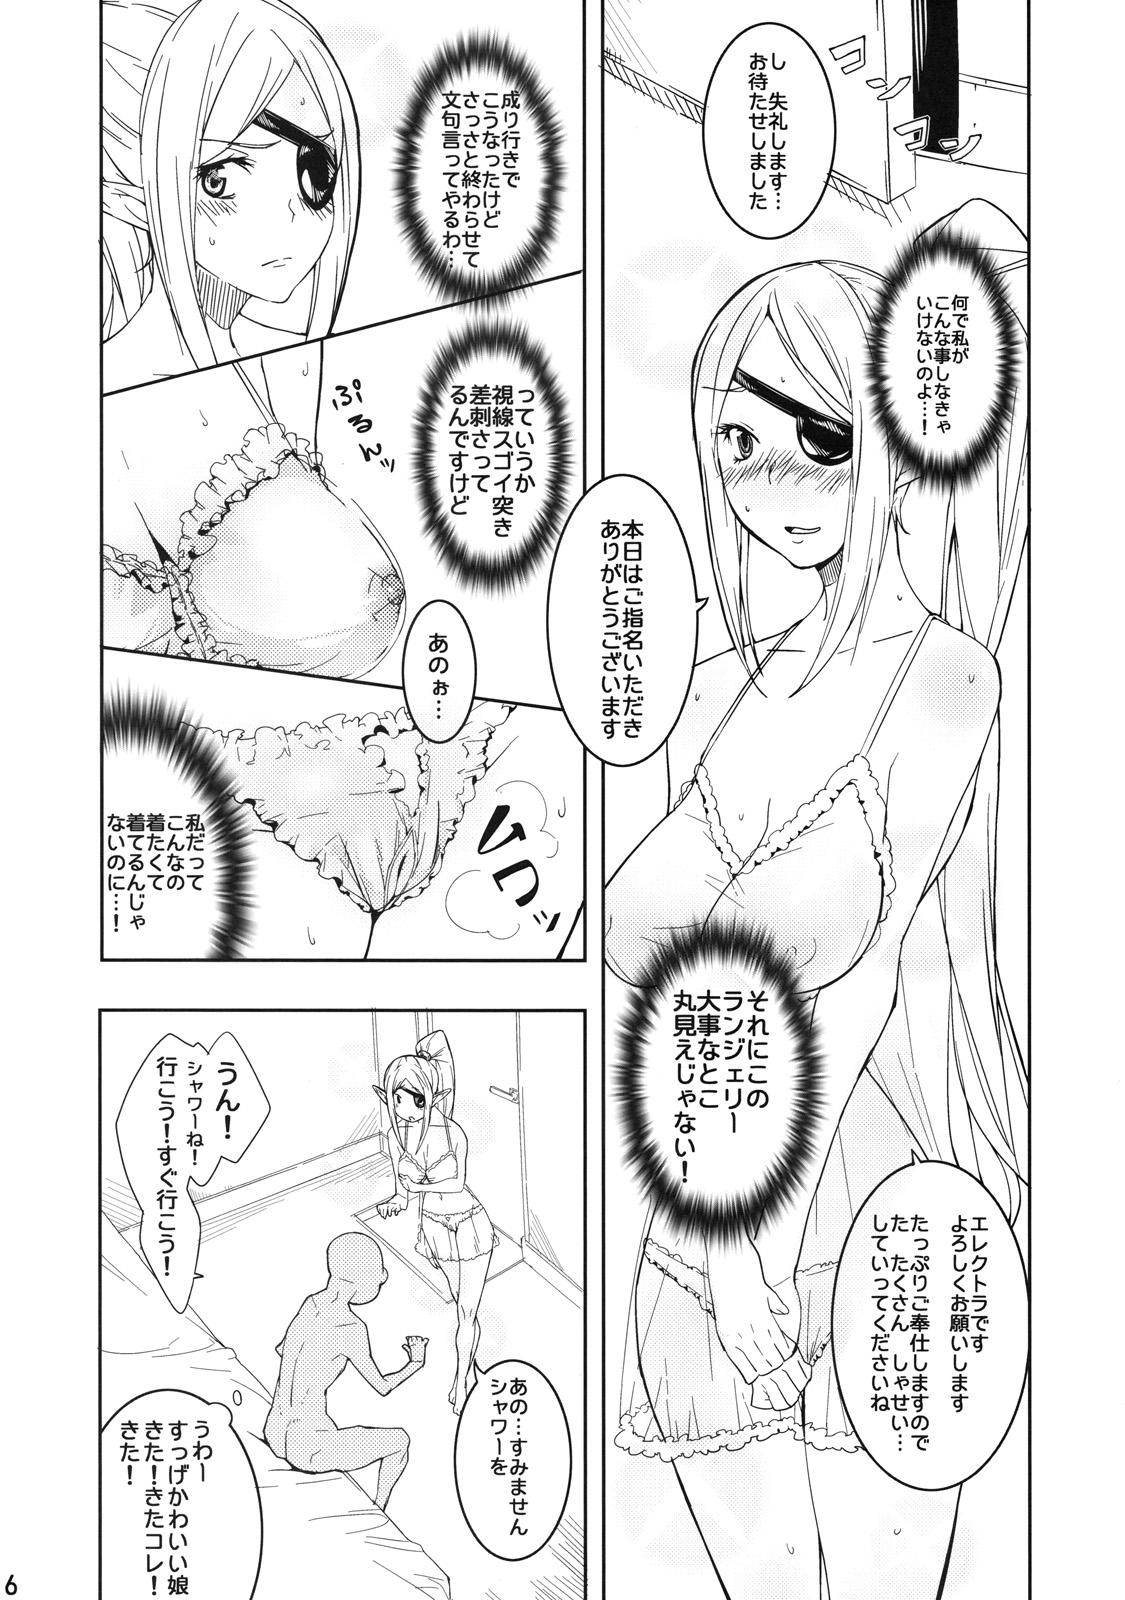 Upskirt Electra Jou wo Koshitsu de Komaraseyou! - Monster collection Spa - Page 5